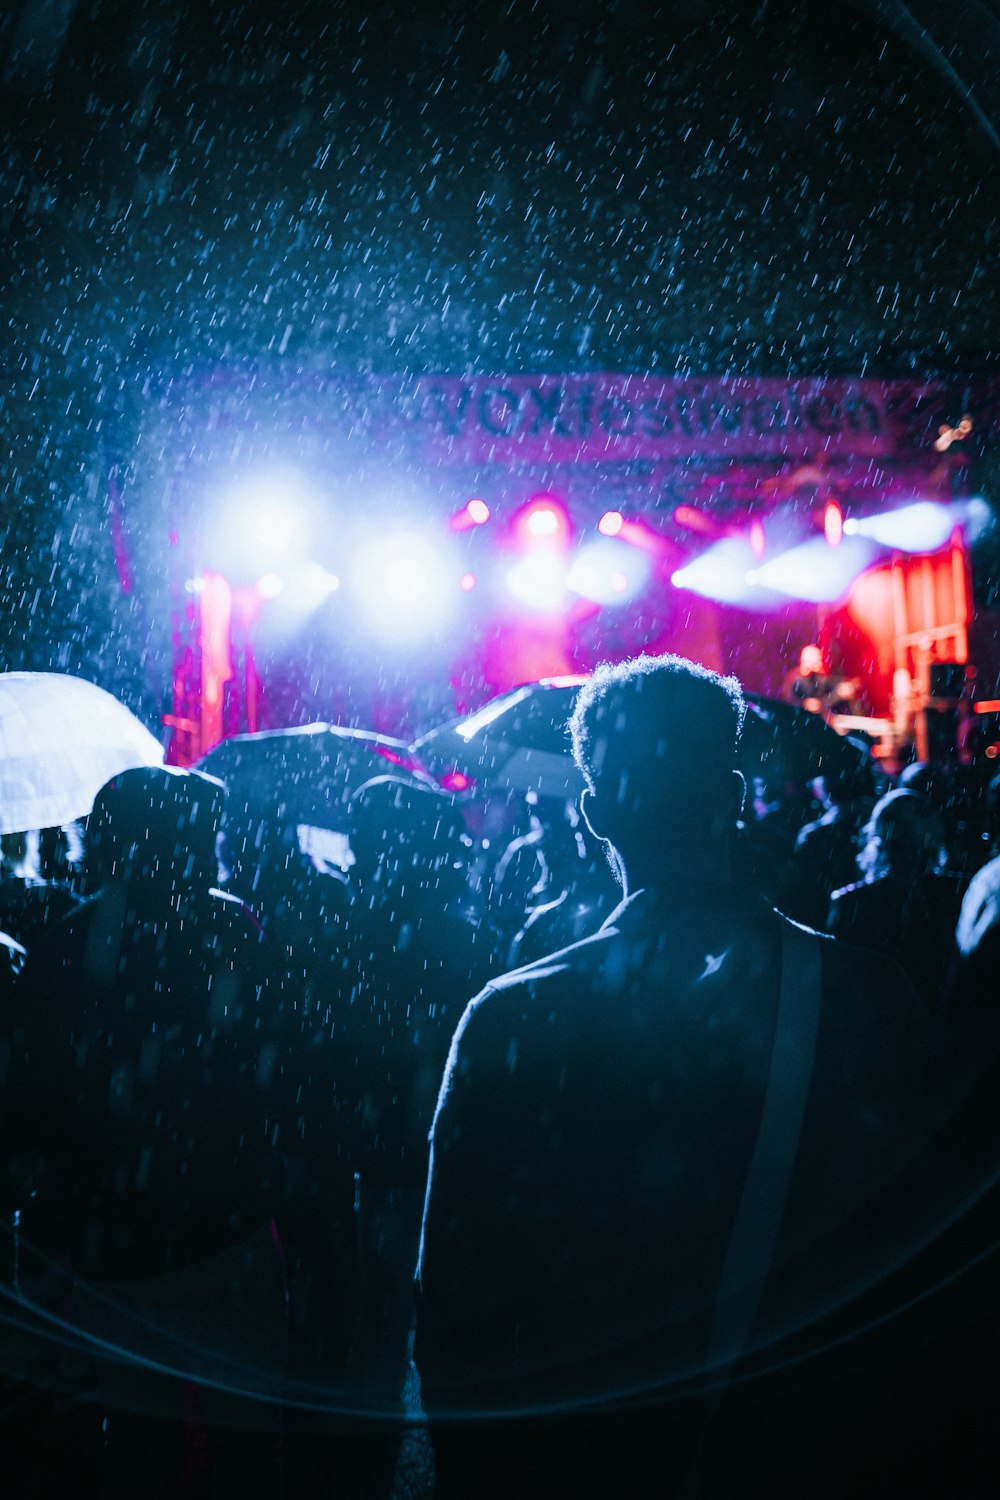 Menschen, die sich ein Live-Konzert bei Regen ansehen